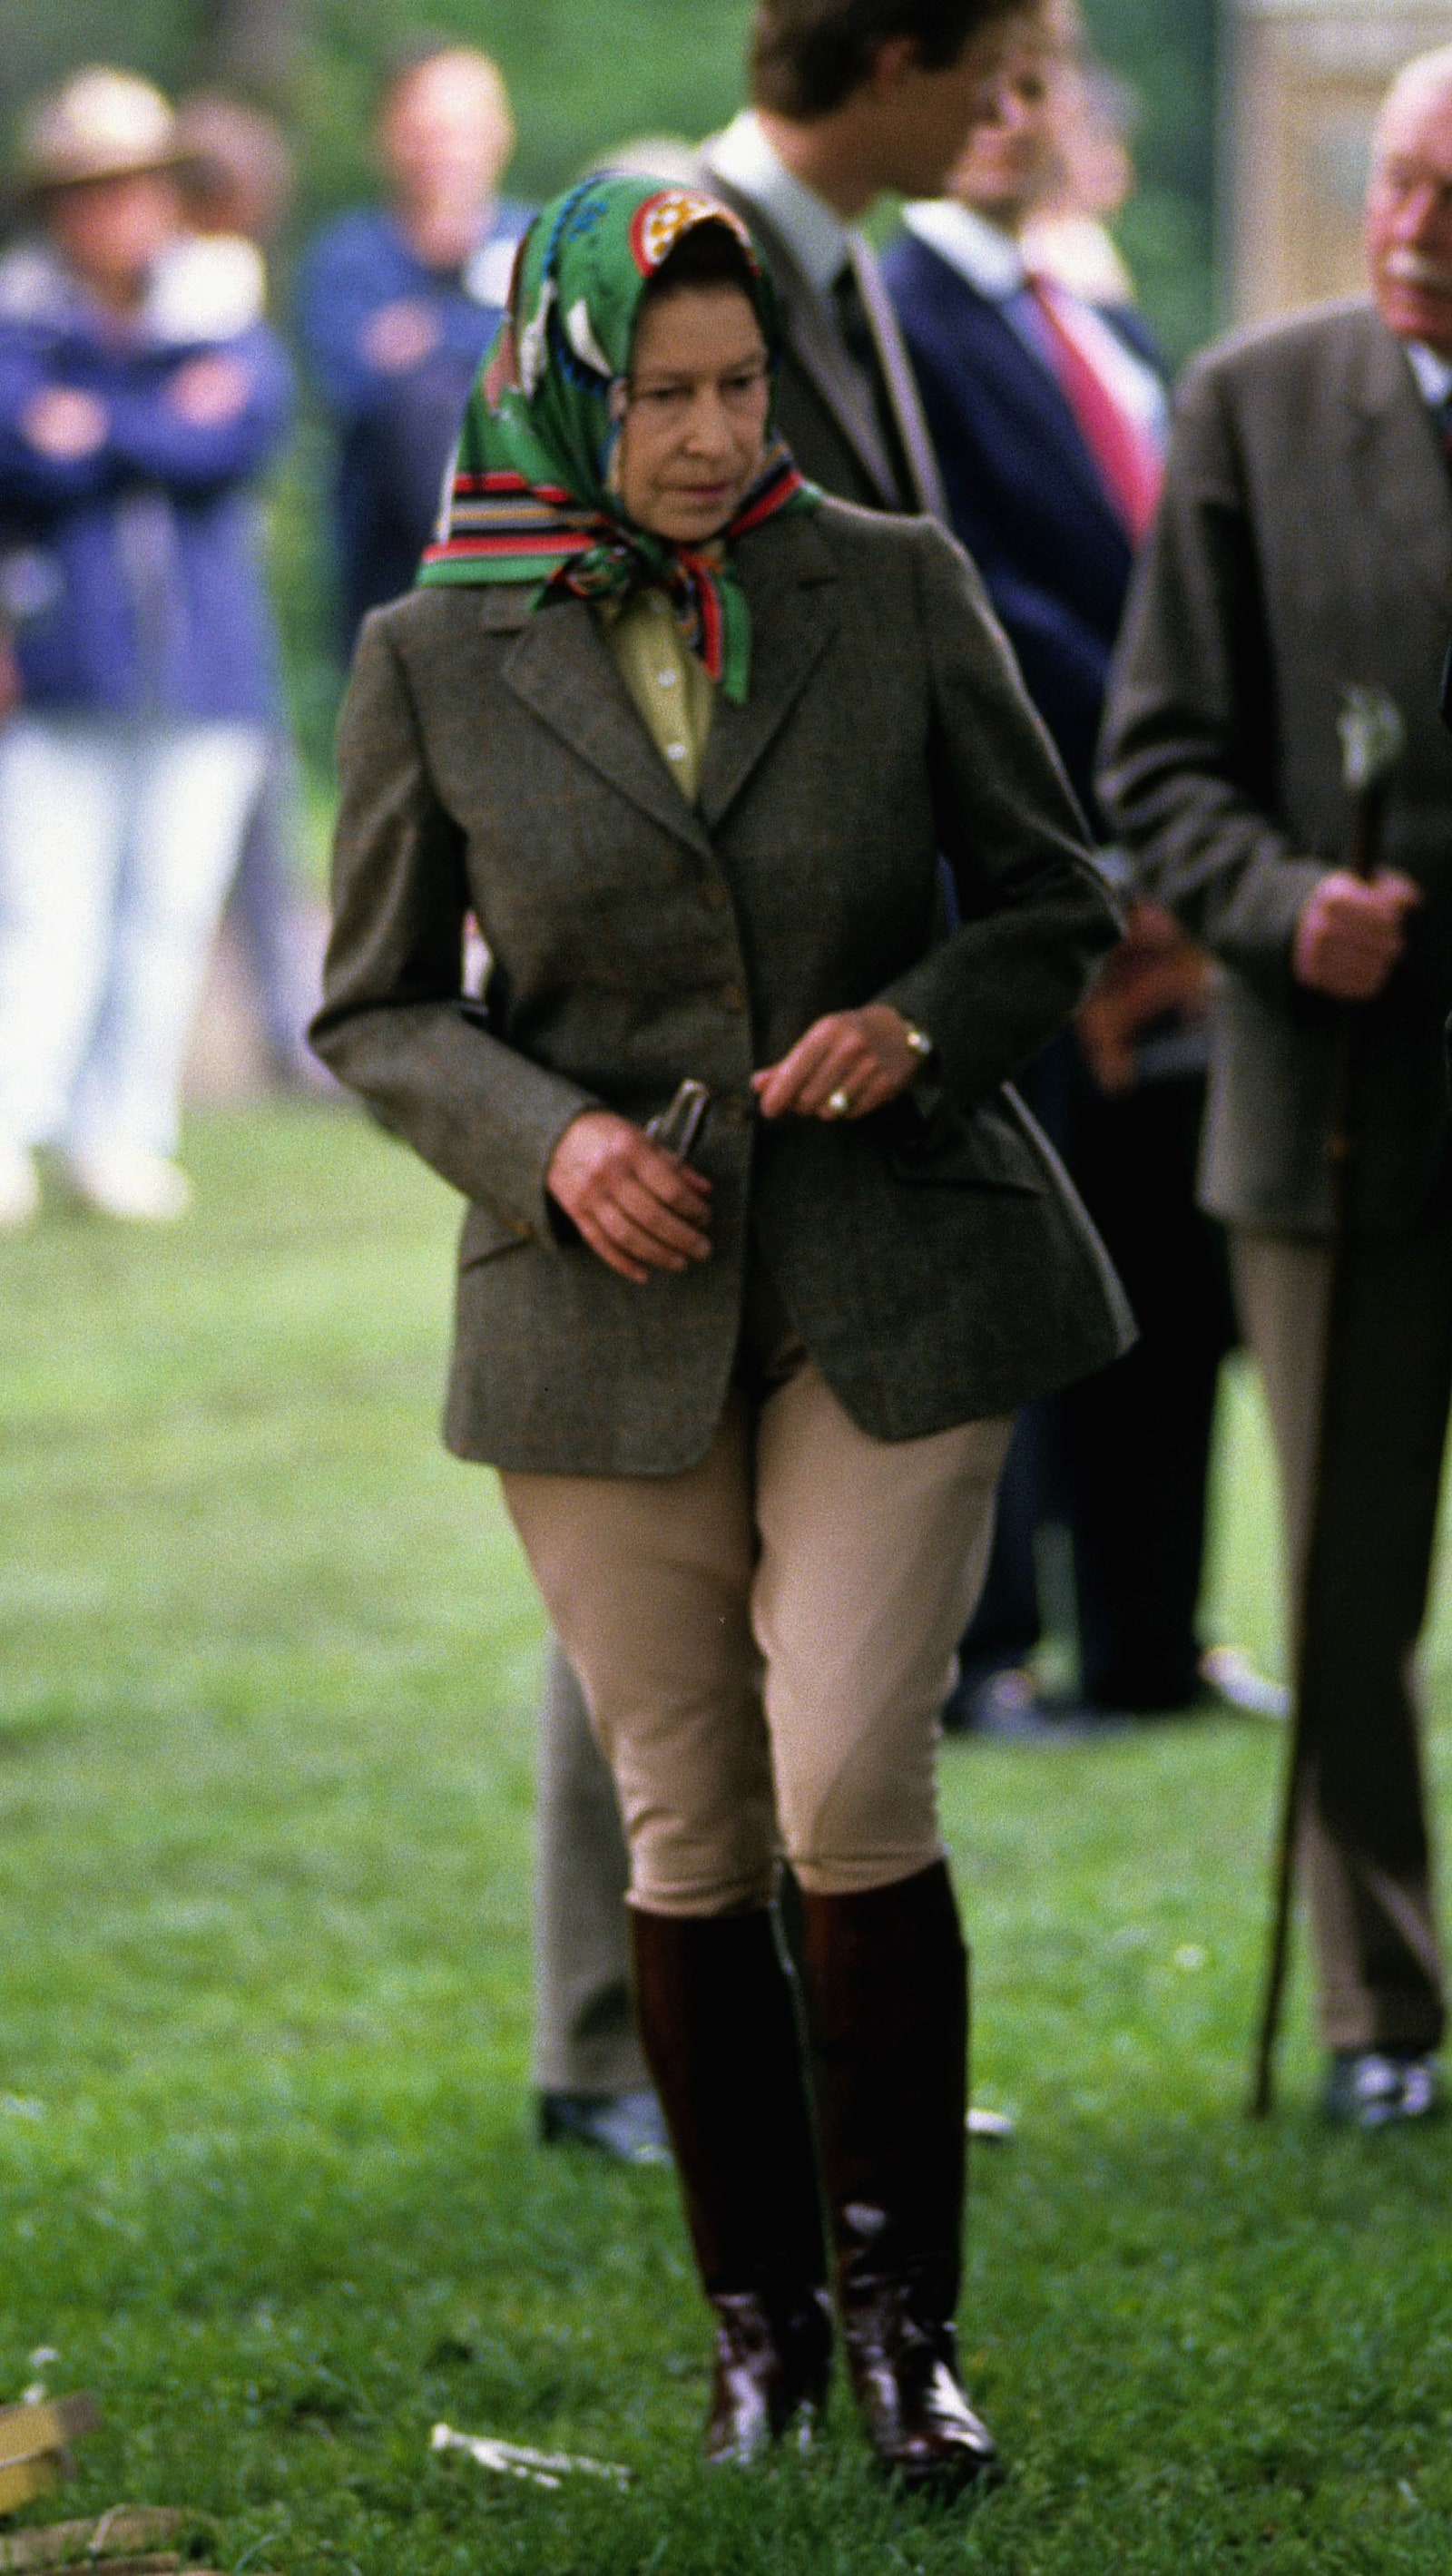 Bí mật đằng sau gu thời trang của Nữ hoàng Anh trong 70 năm trị vì: Dùng trang phục để thể hiện quyền lực - Ảnh 13.